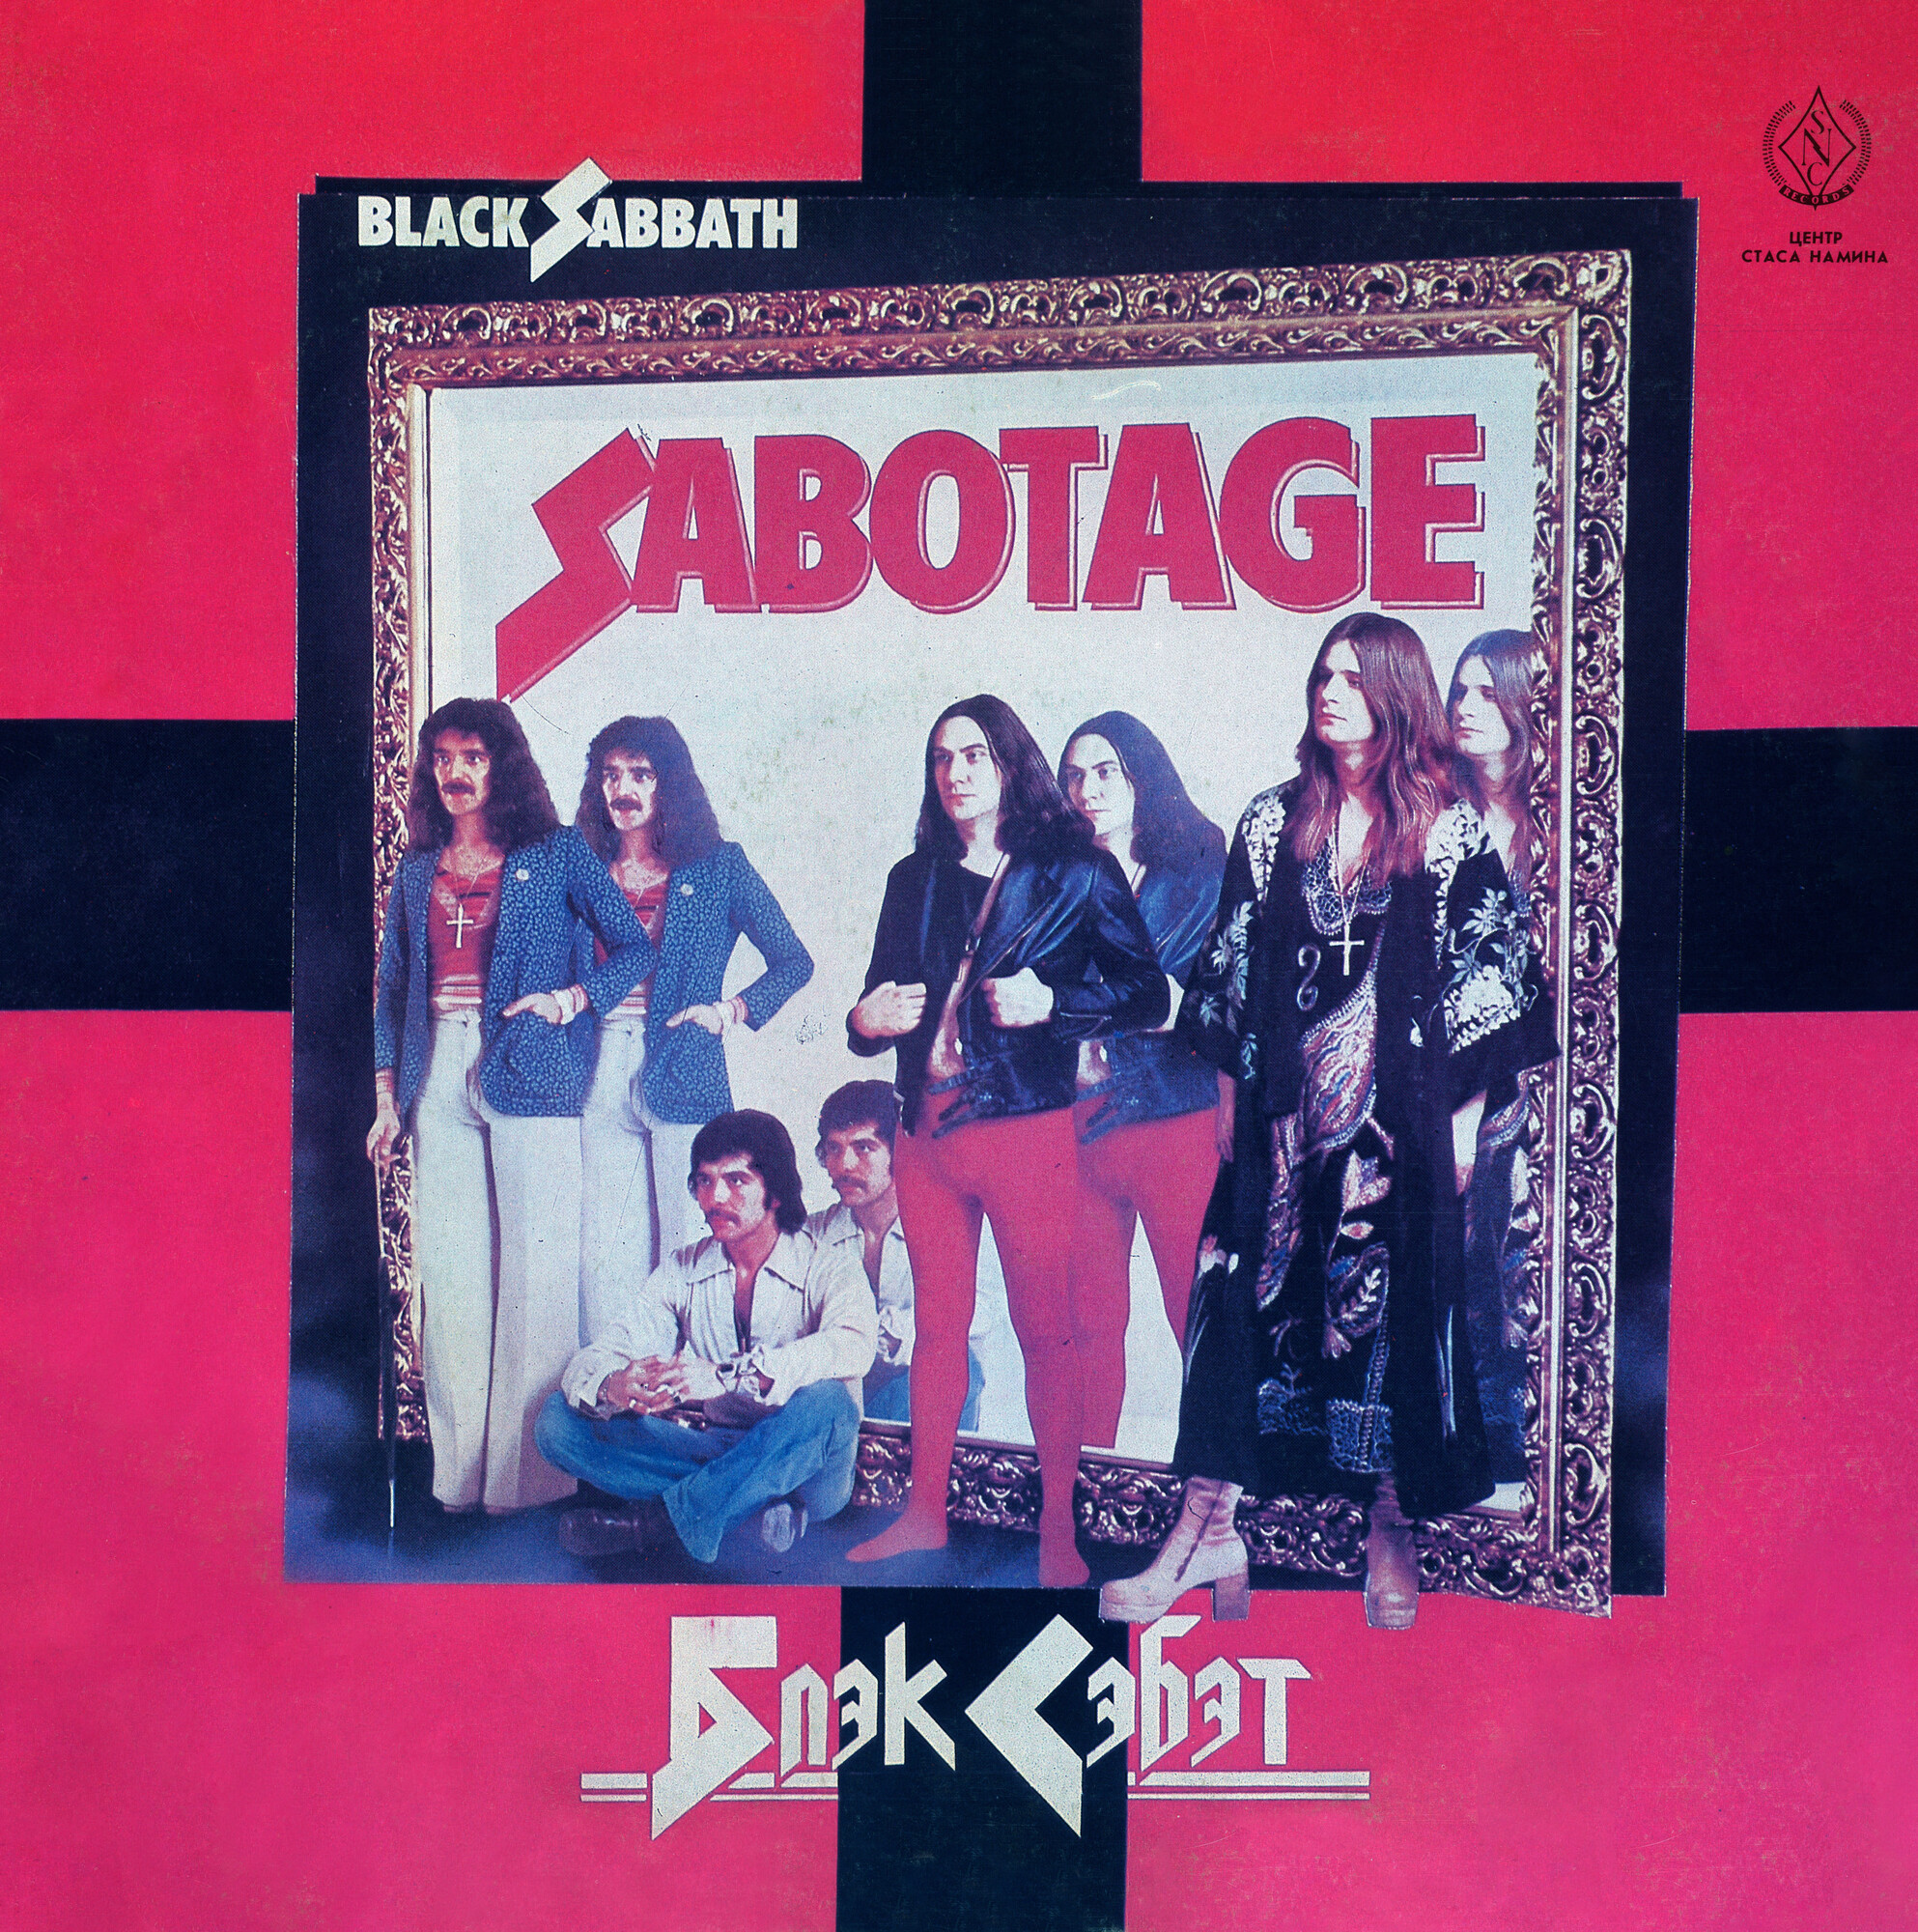 Black Sabbath — Sabotage